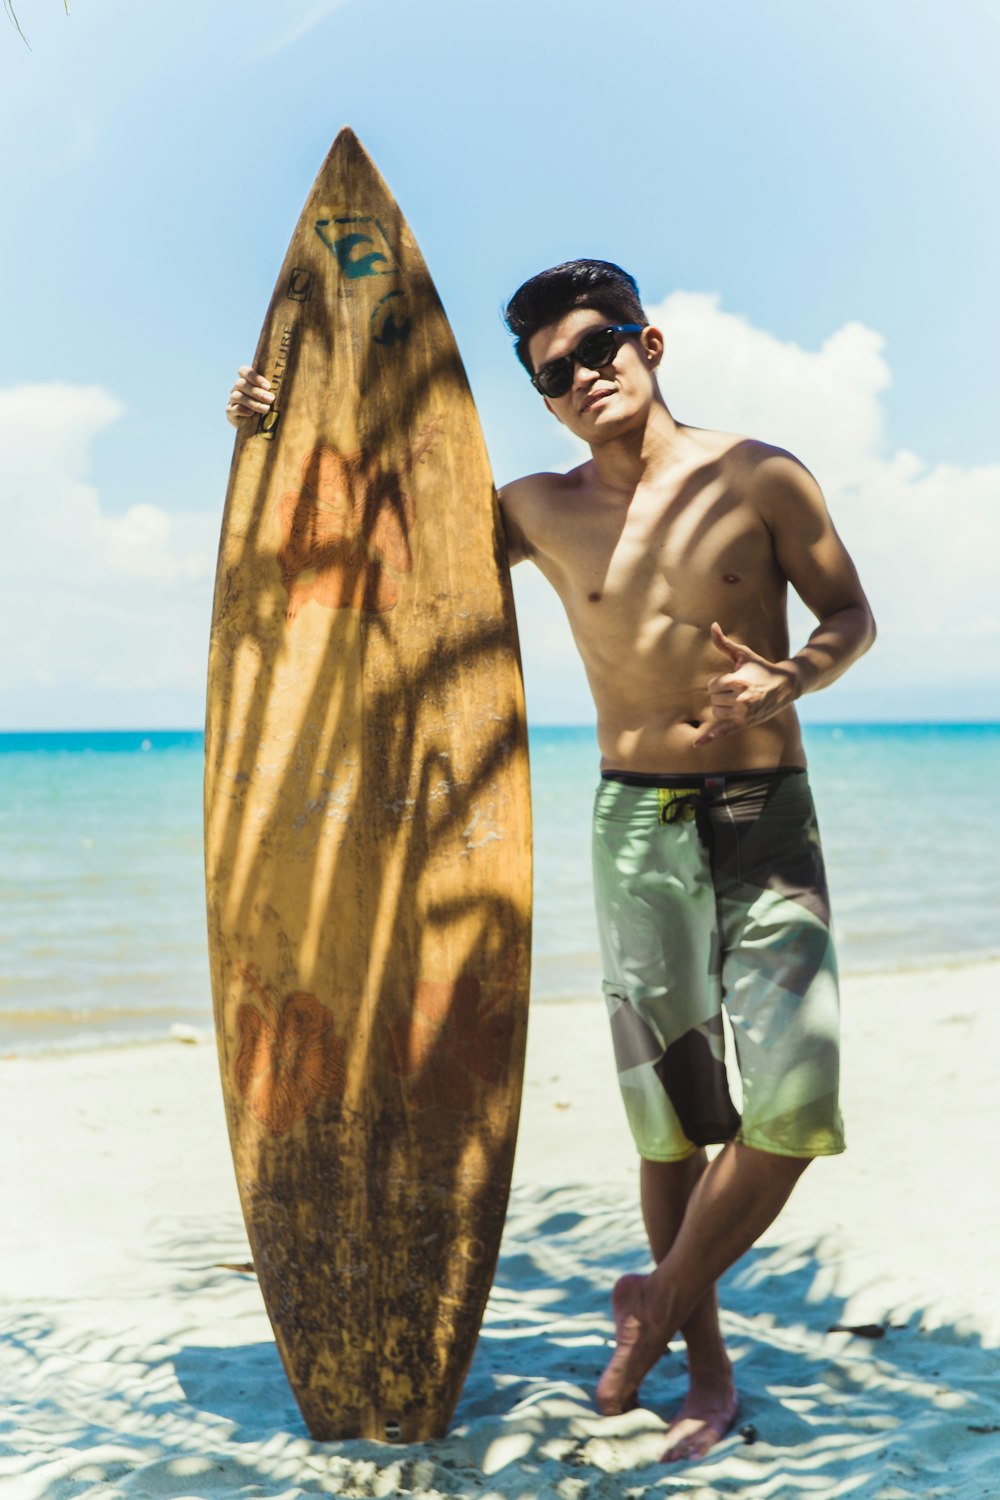 a man standing next to a surfboard on a beach